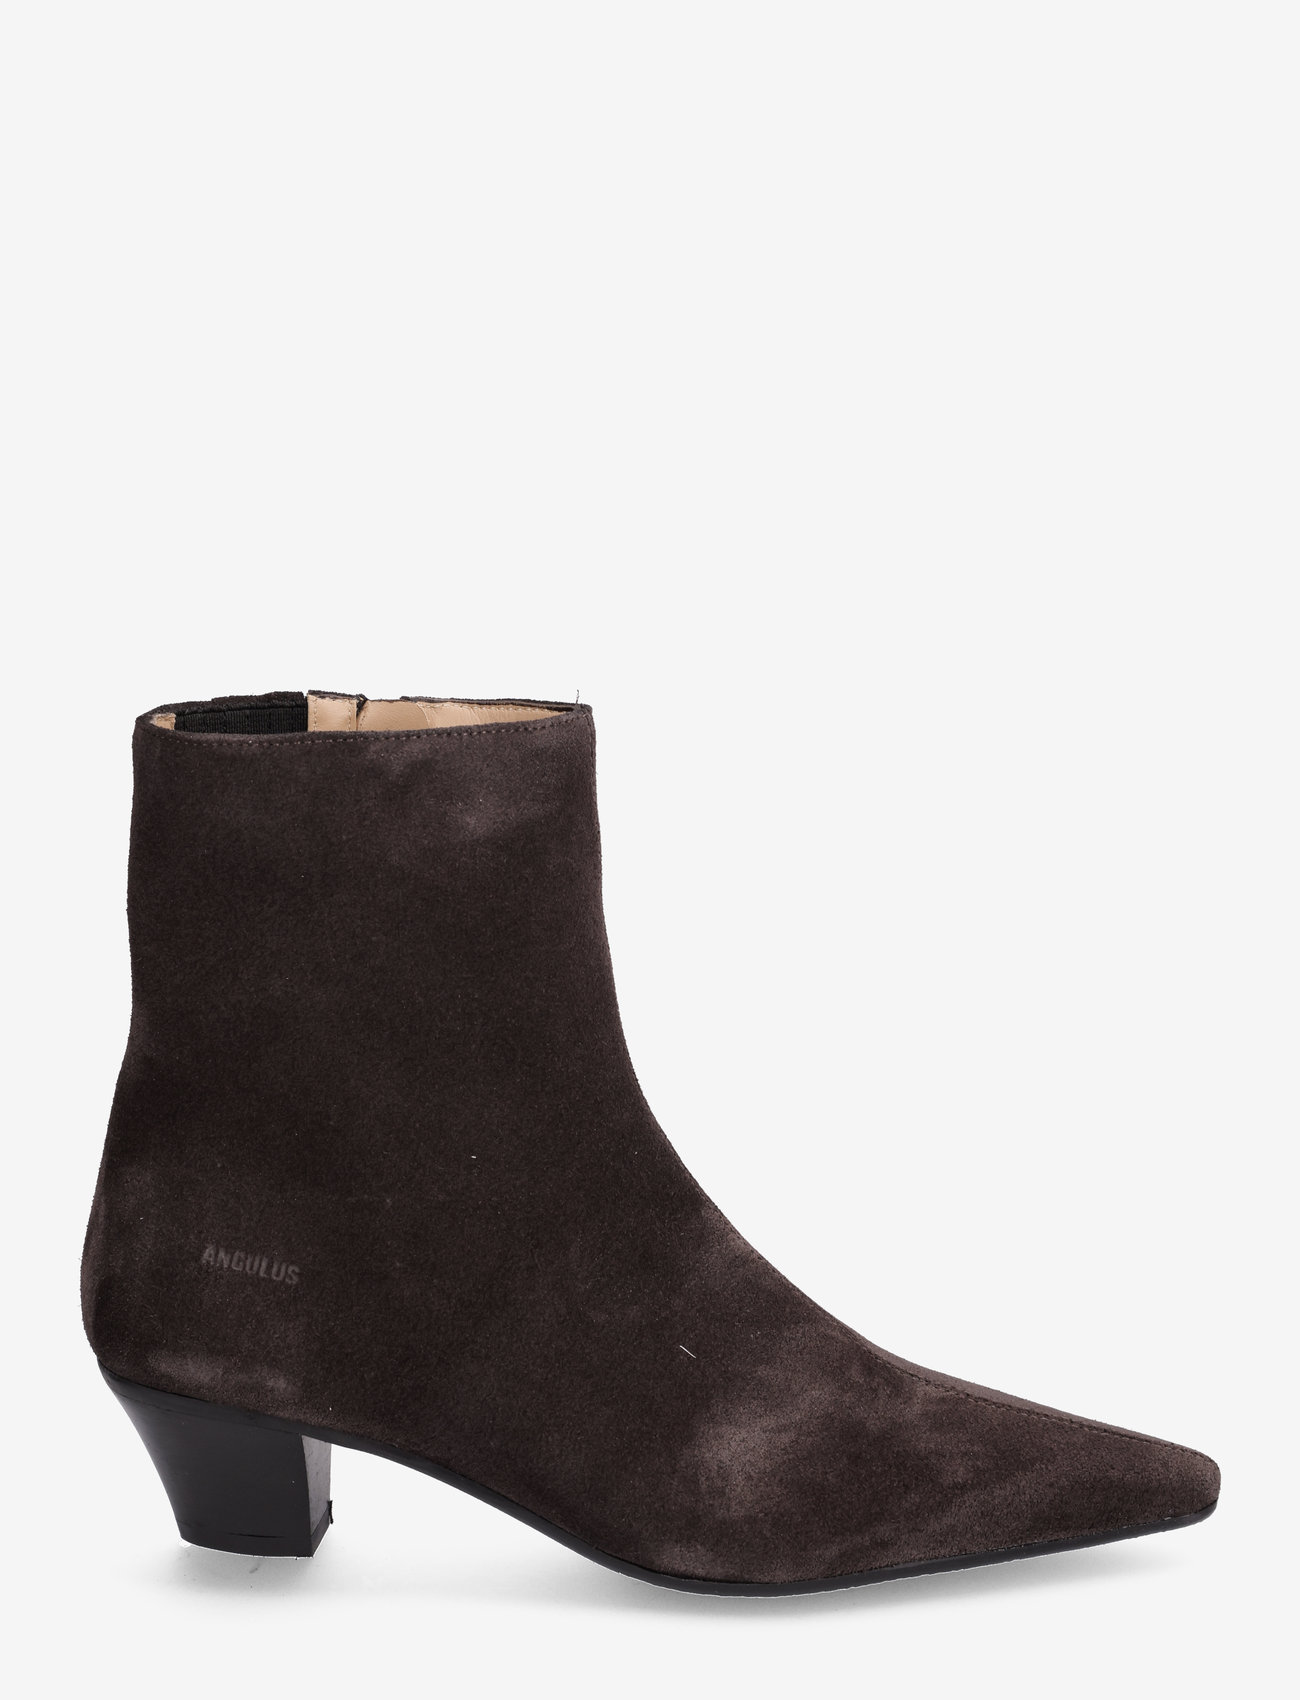 ANGULUS - Boots - Block heel with zipper - høye hæler - 1716/001 espresso - 1